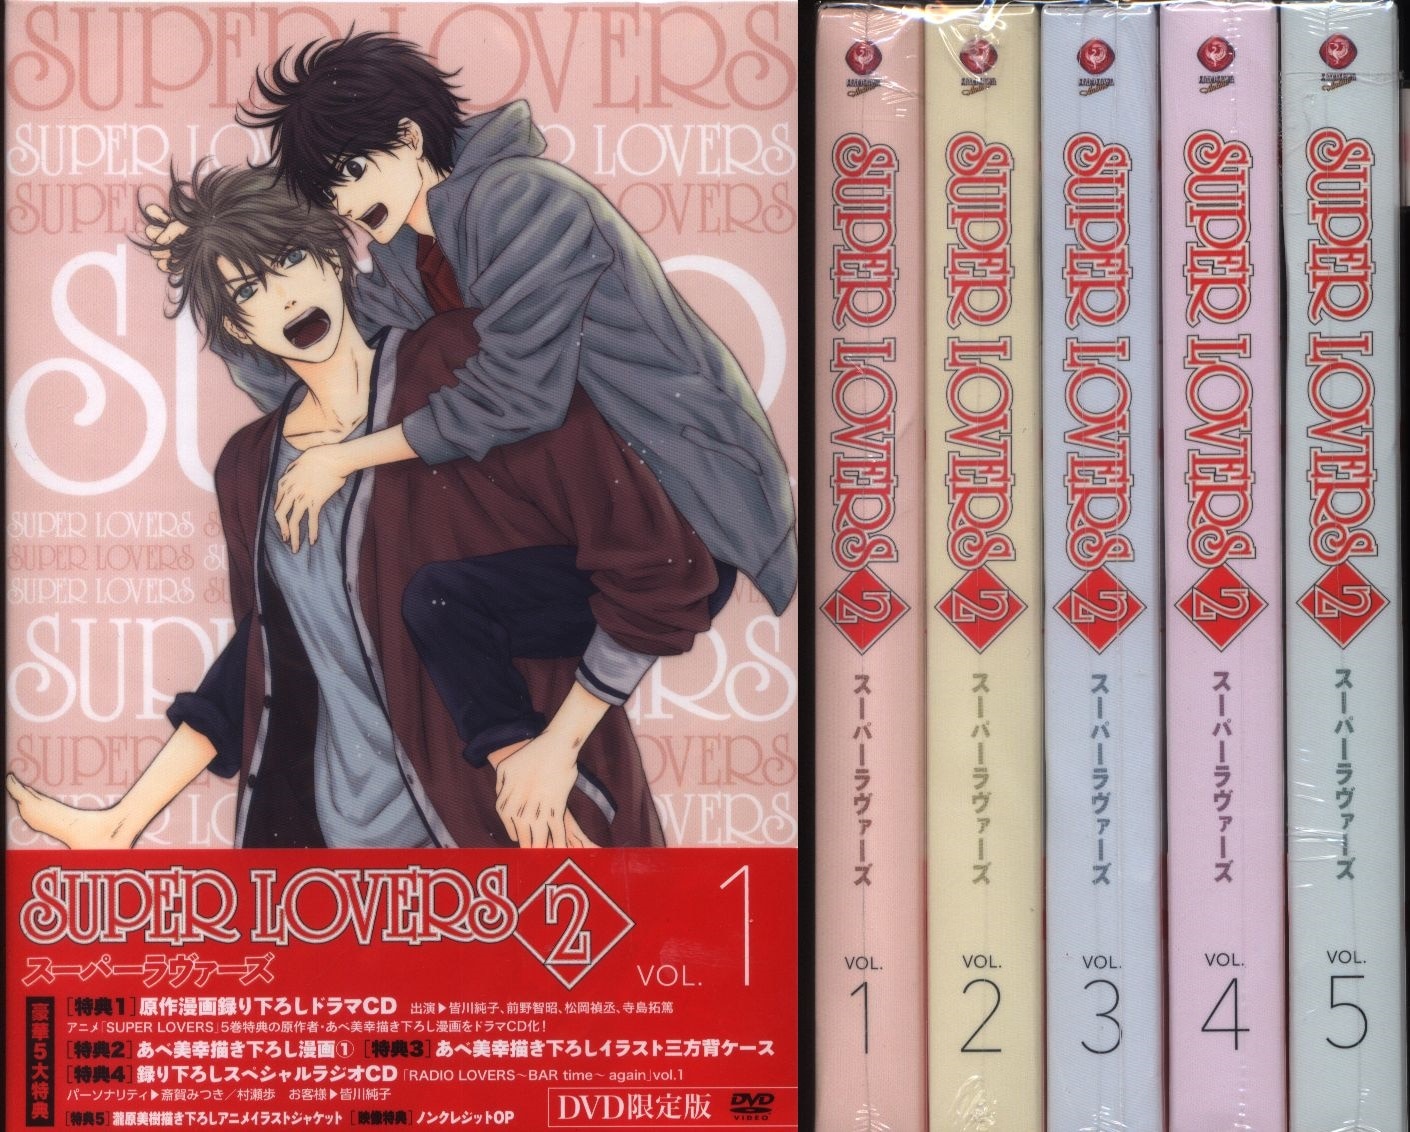 スーパーラヴァーズ 1・2 DVD10巻セット - アニメ